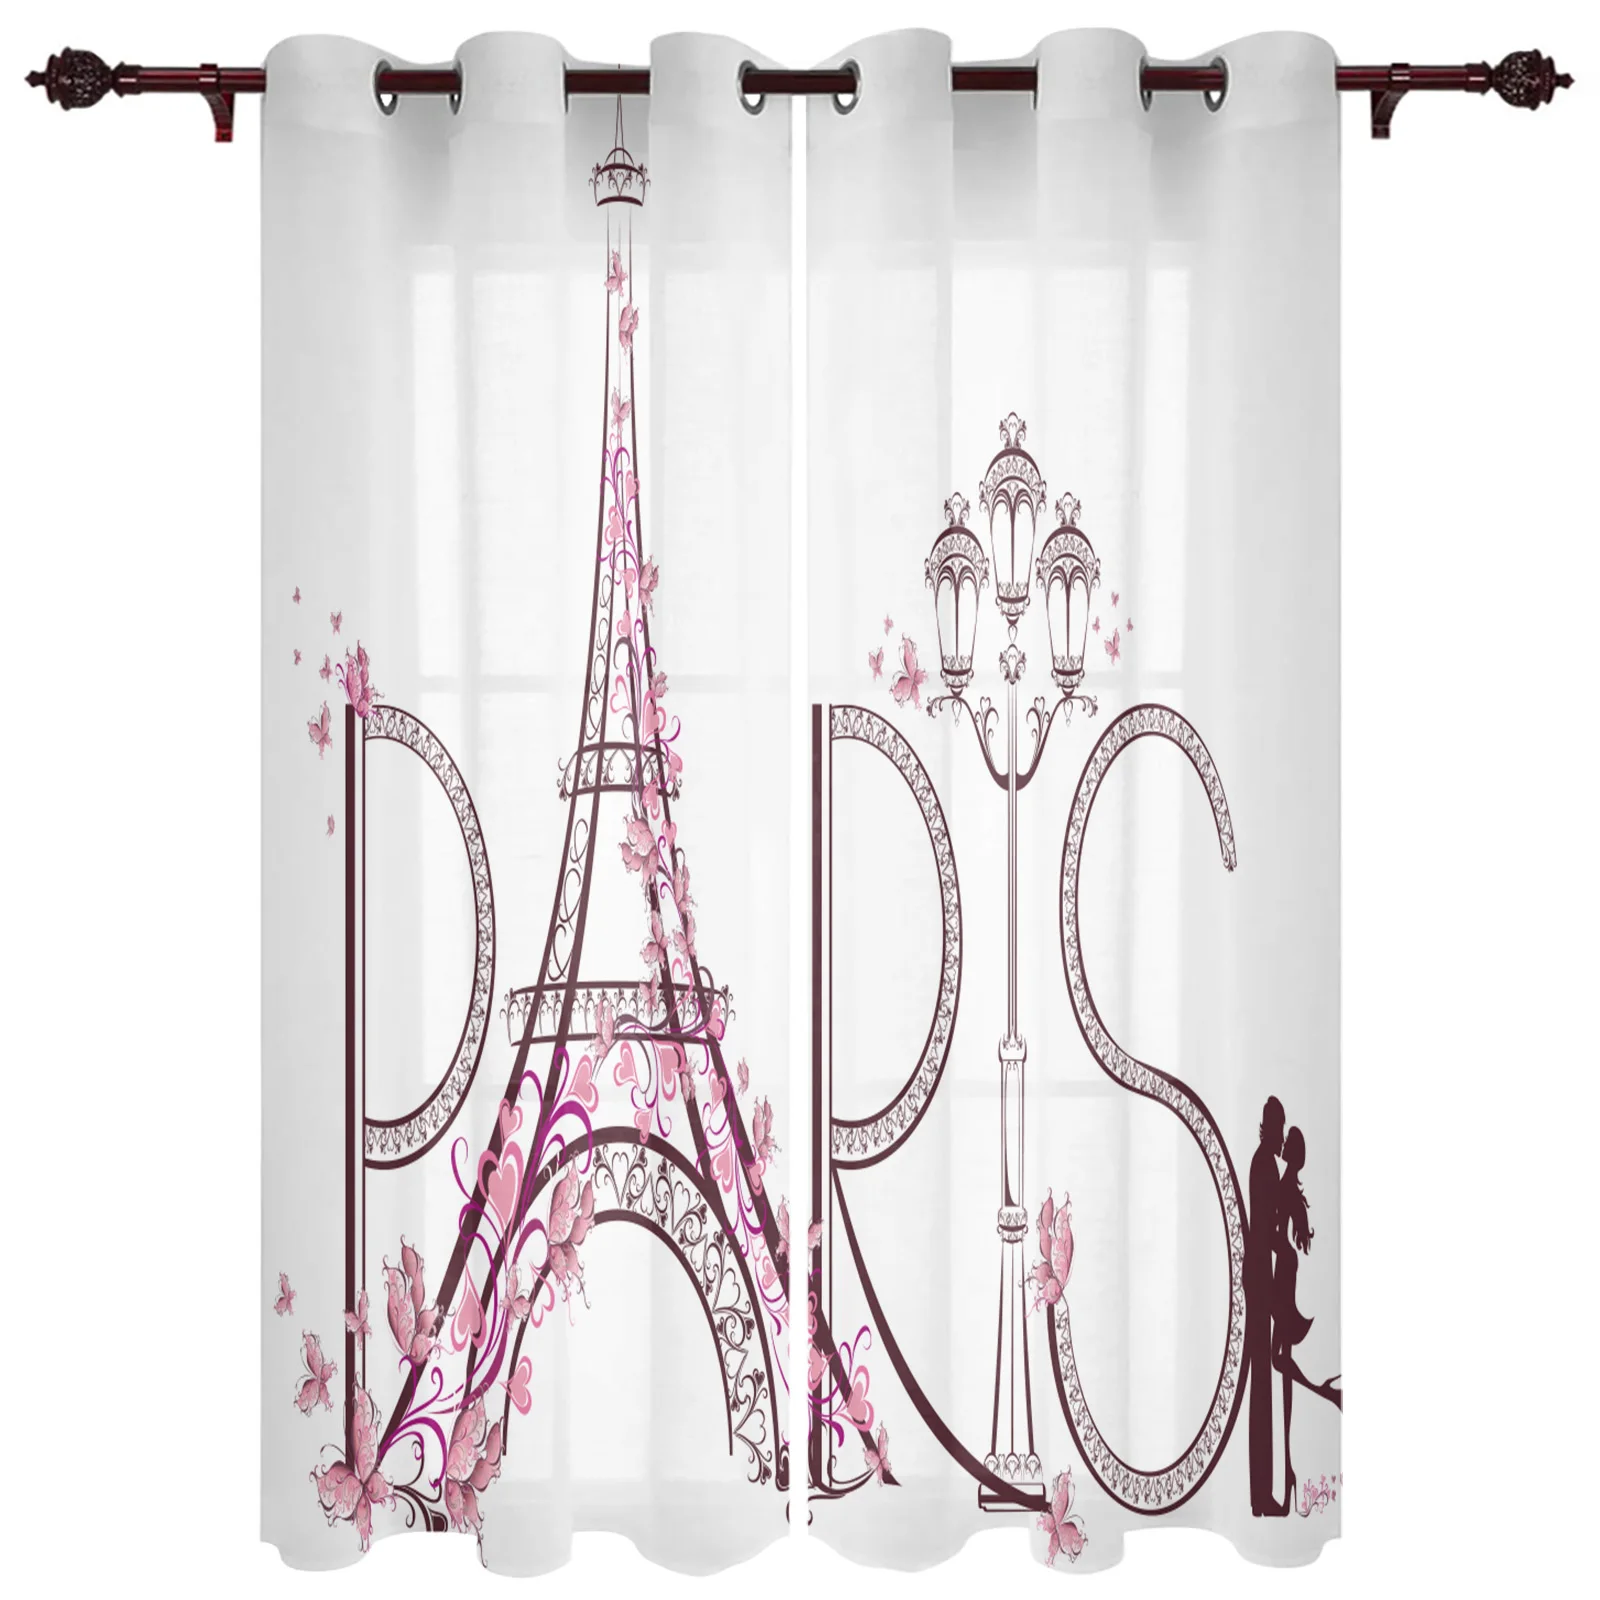 

Франция Париж Эйфелева башня розовые белые Оконные Занавески для гостиной дверь детской комнаты занавески для кухонных окон